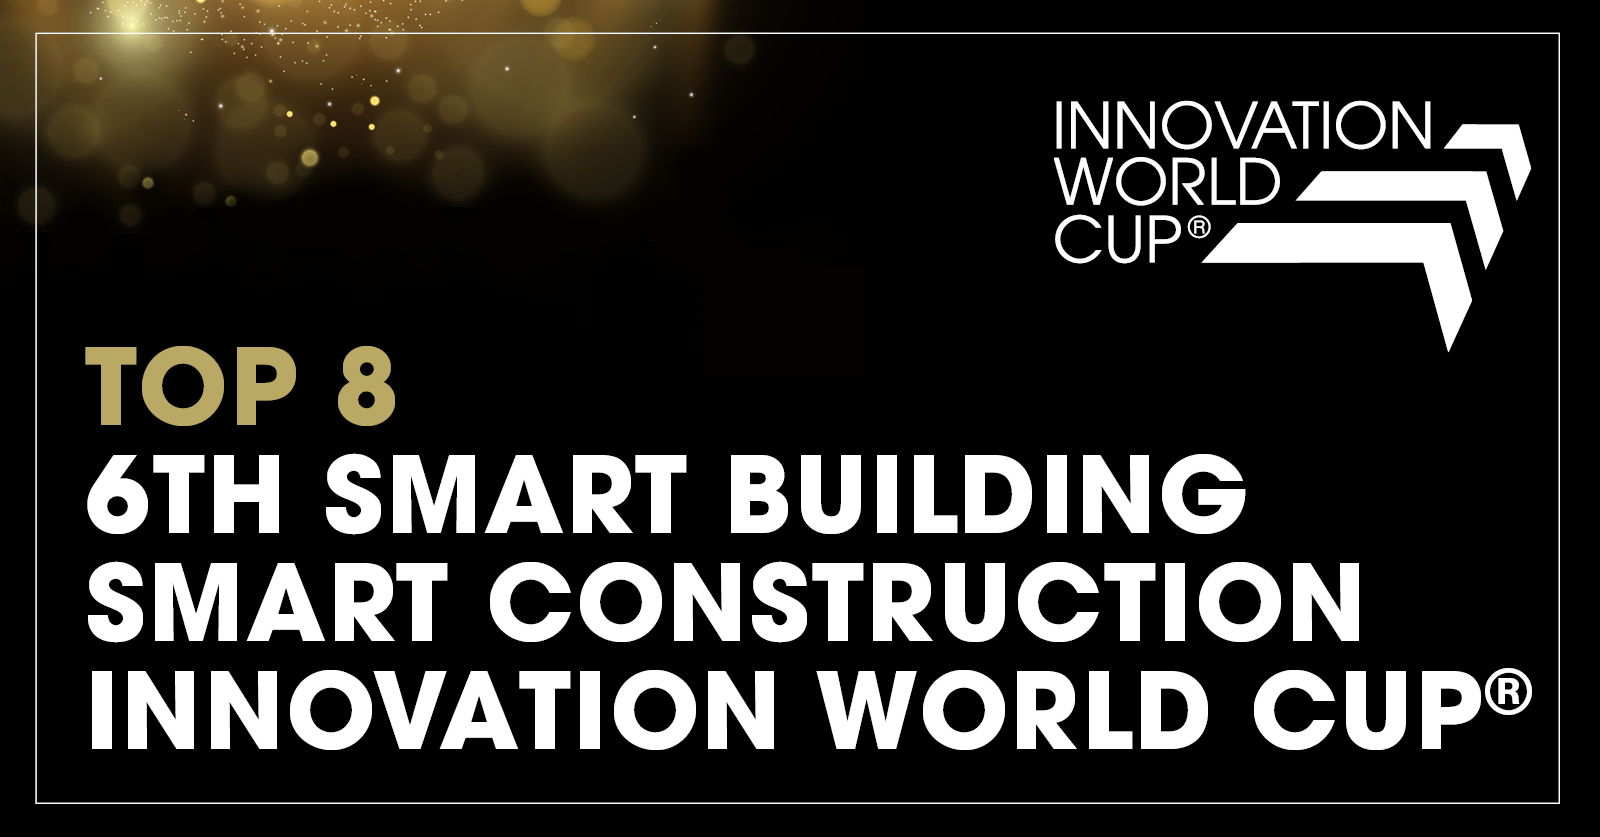 Στο Παγκόσμιο Κύπελλο Καινοτομίας 2023© στο Μόναχο, ο Ευρωπαίος ειδικός στο σύστημα HVAC Hysopt έχει αναγνωριστεί ως ένας από τους κορυφαίους καινοτόμους έξυπνων κτιρίων και έξυπνων κατασκευών παγκοσμίως.